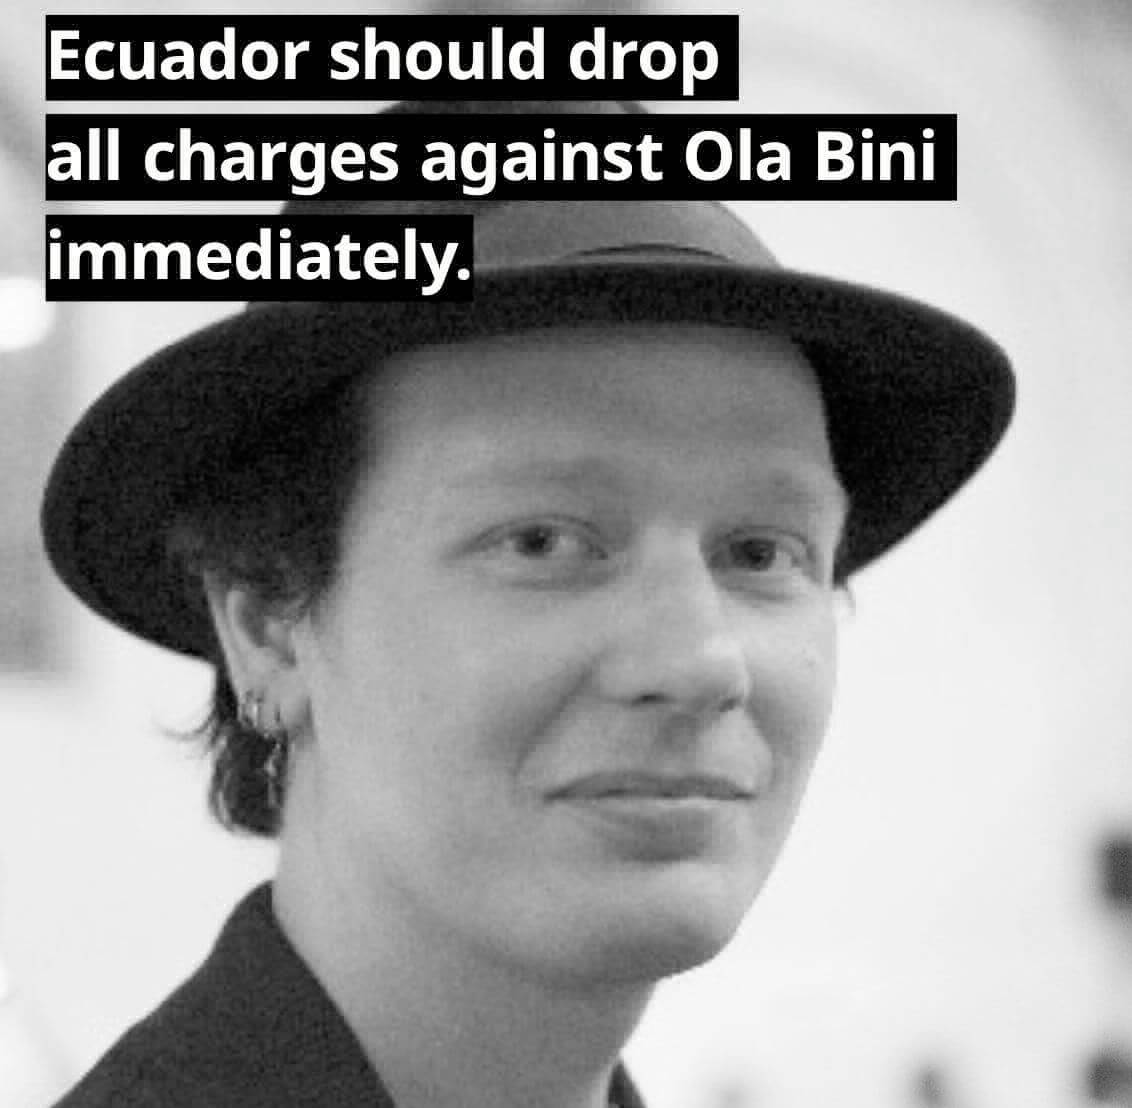 Carta de Solidaridade pela Liberdade de Ola Bini